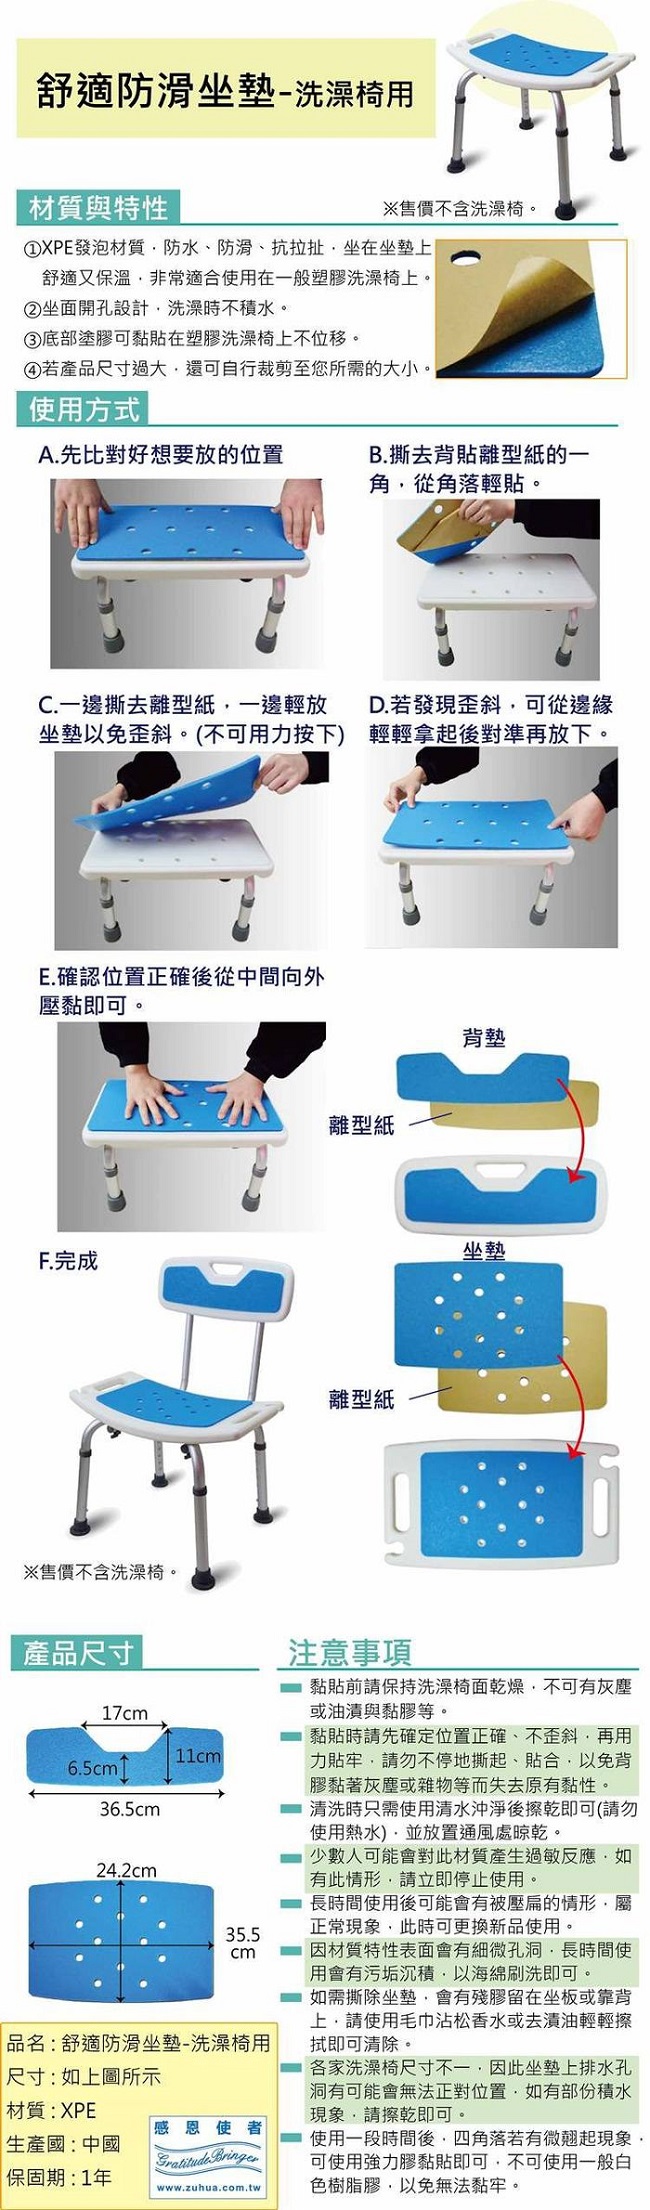 舒適防滑坐墊-洗澡椅用 坐墊+背墊 自行黏貼 防水防滑又舒適